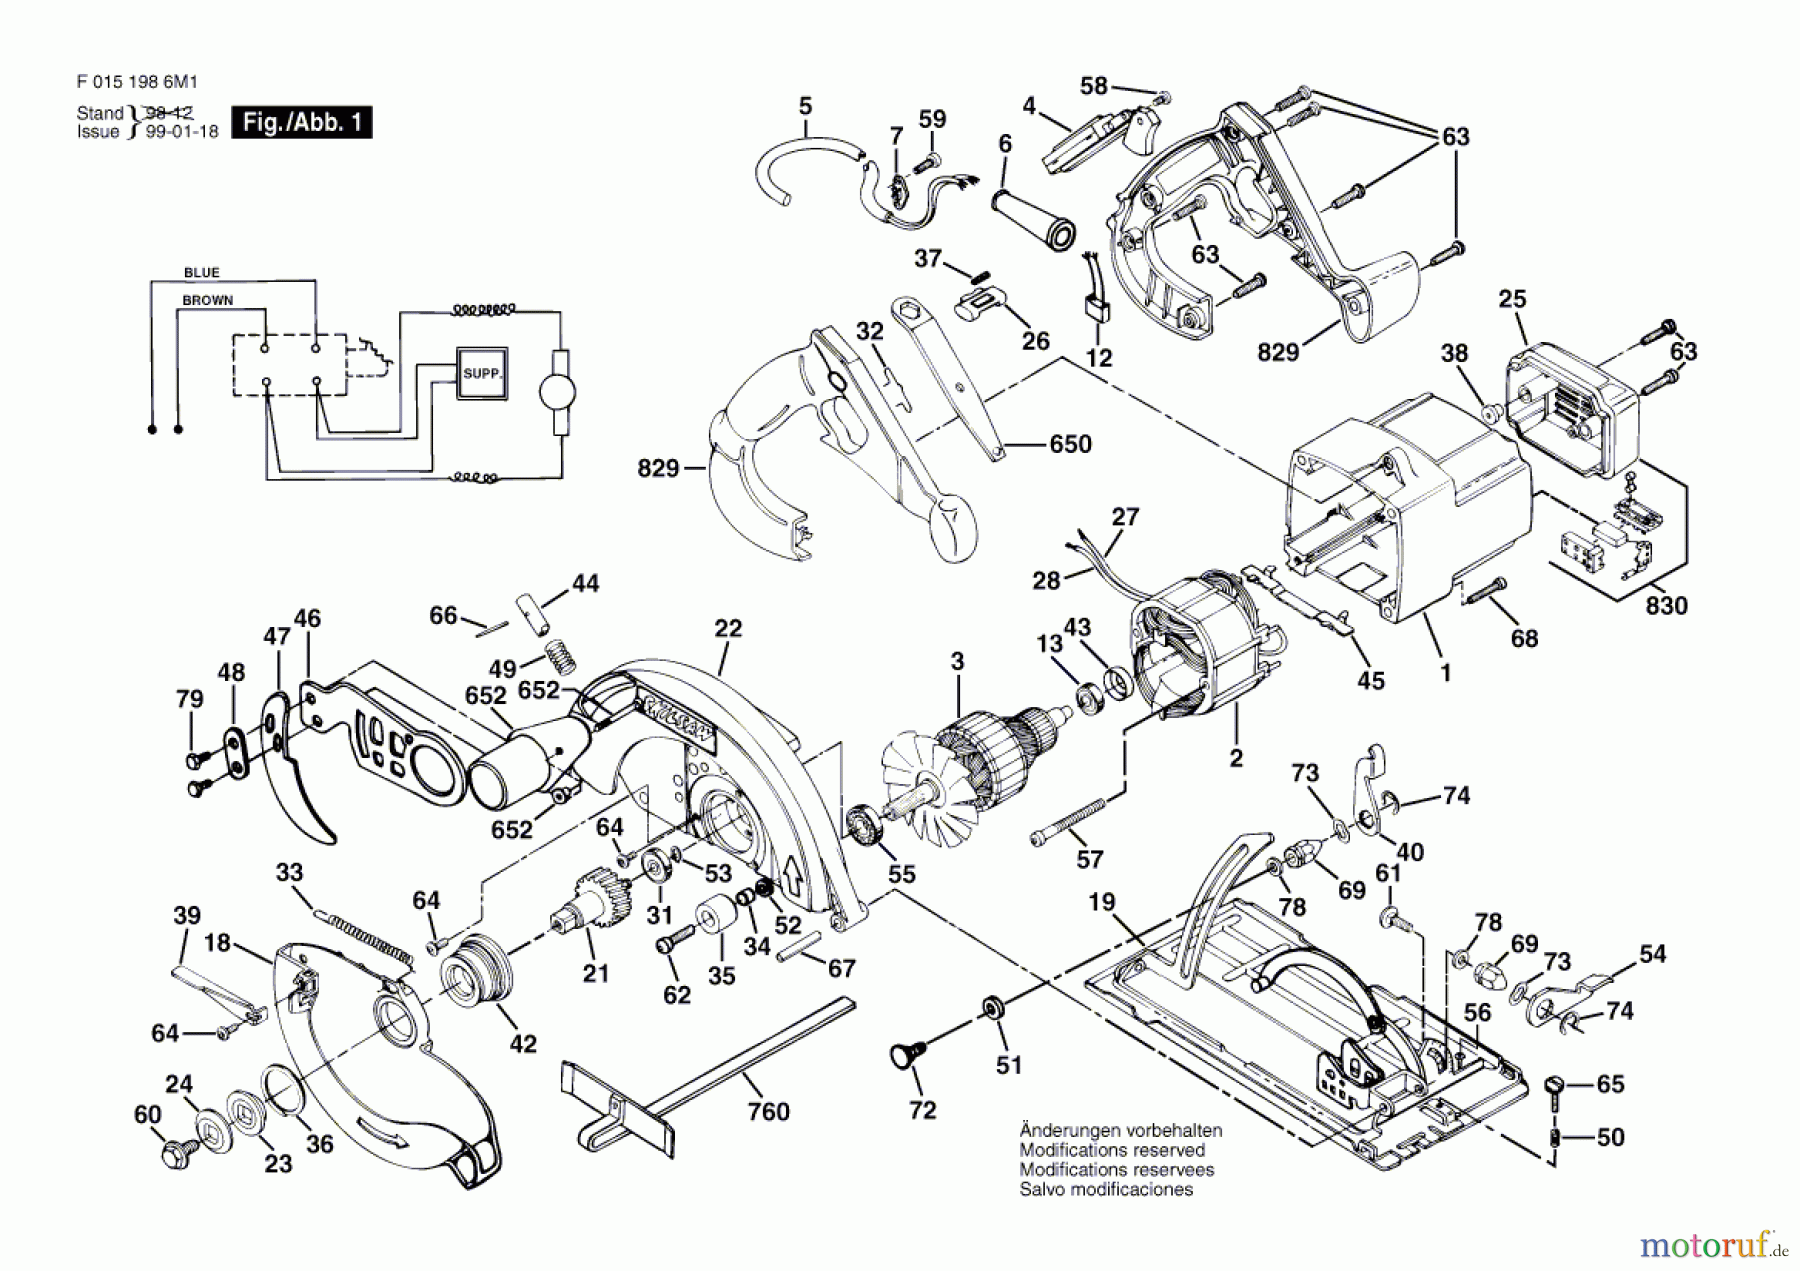  Bosch Werkzeug Bauteil 1986U1 Seite 1